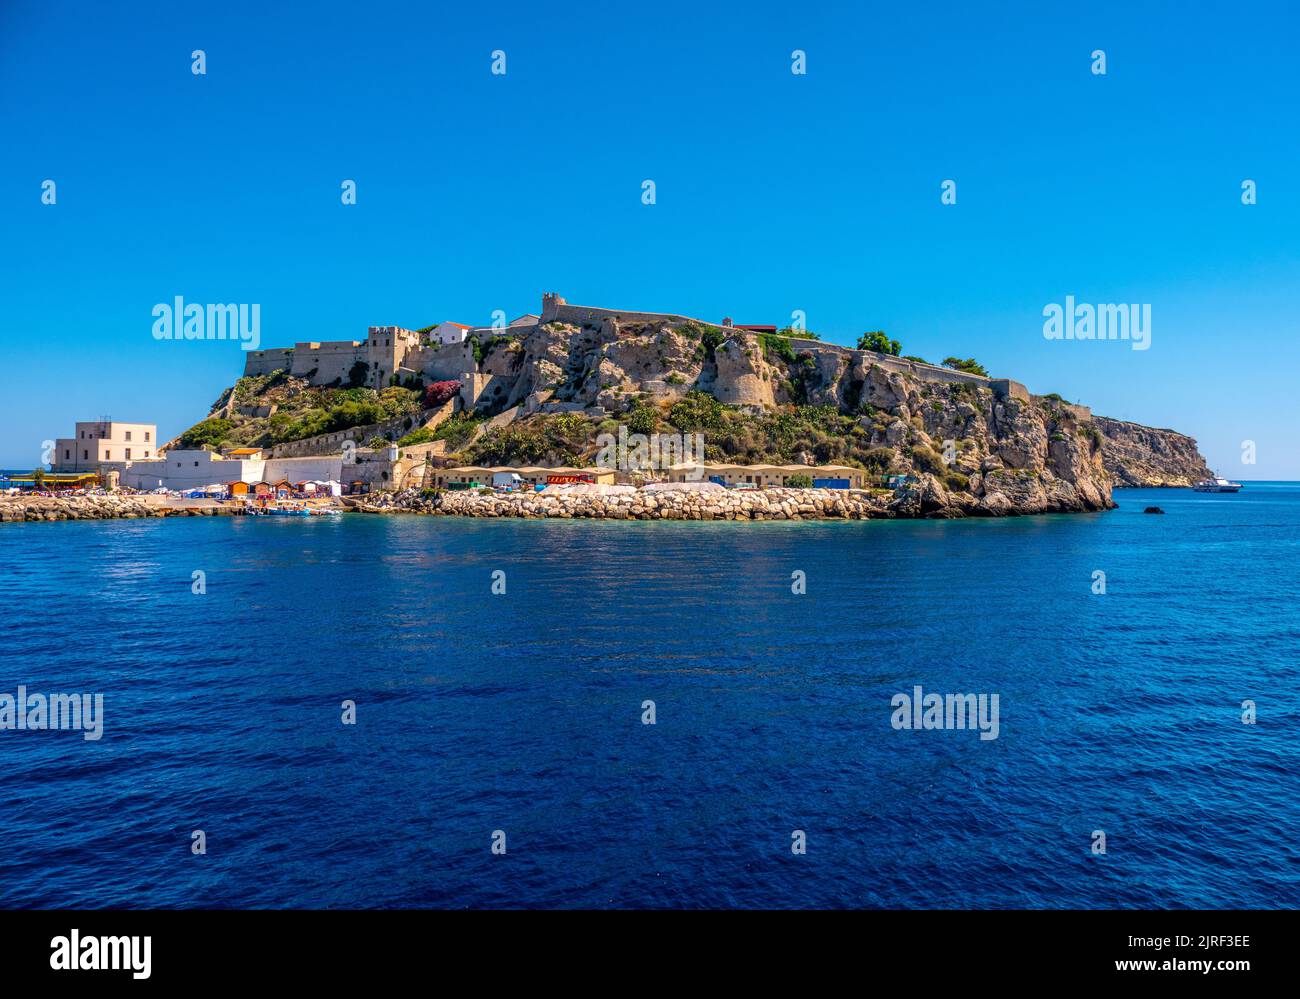 Isole Tremiti Insel San Nicola in Gargano Apulien - Italien Stockfoto